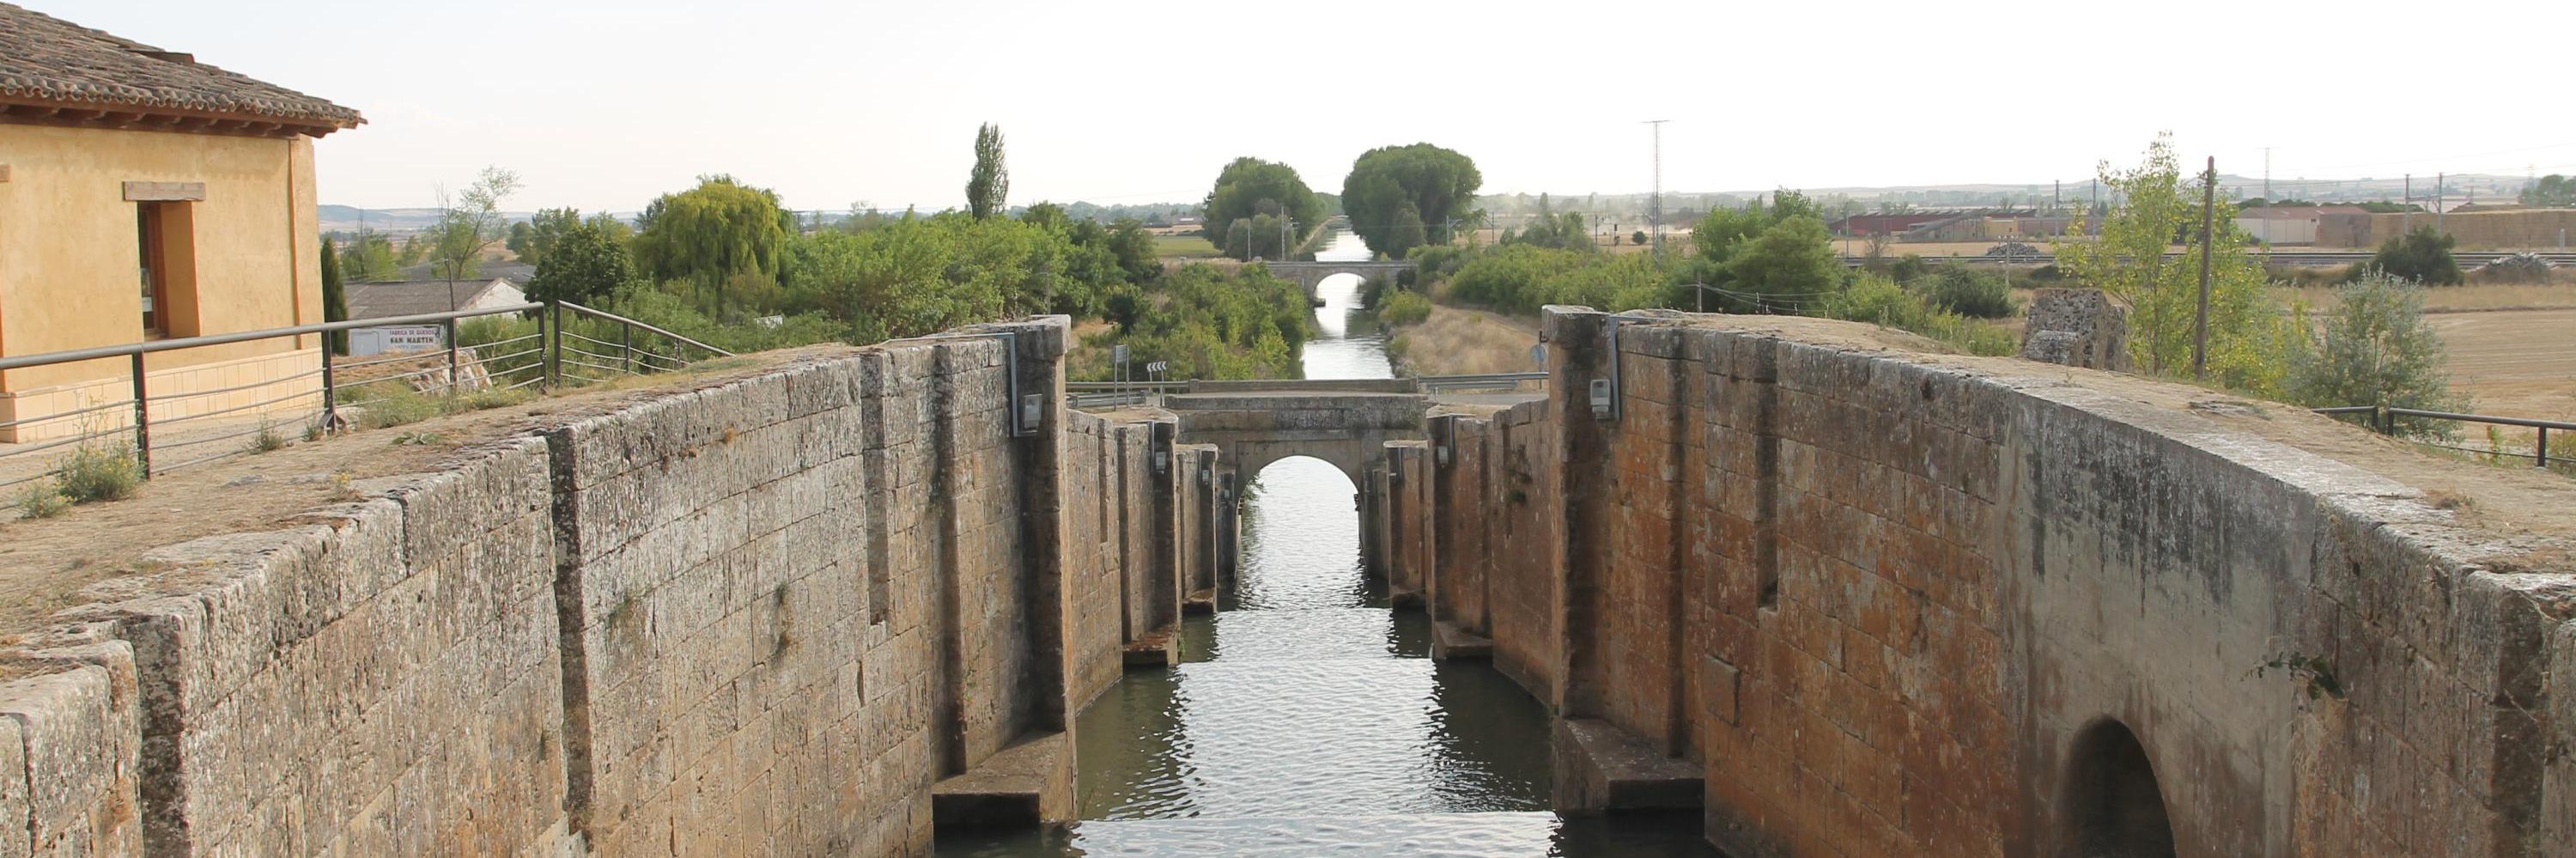 Esclusa 17y18y19y20, Canal de Castilla